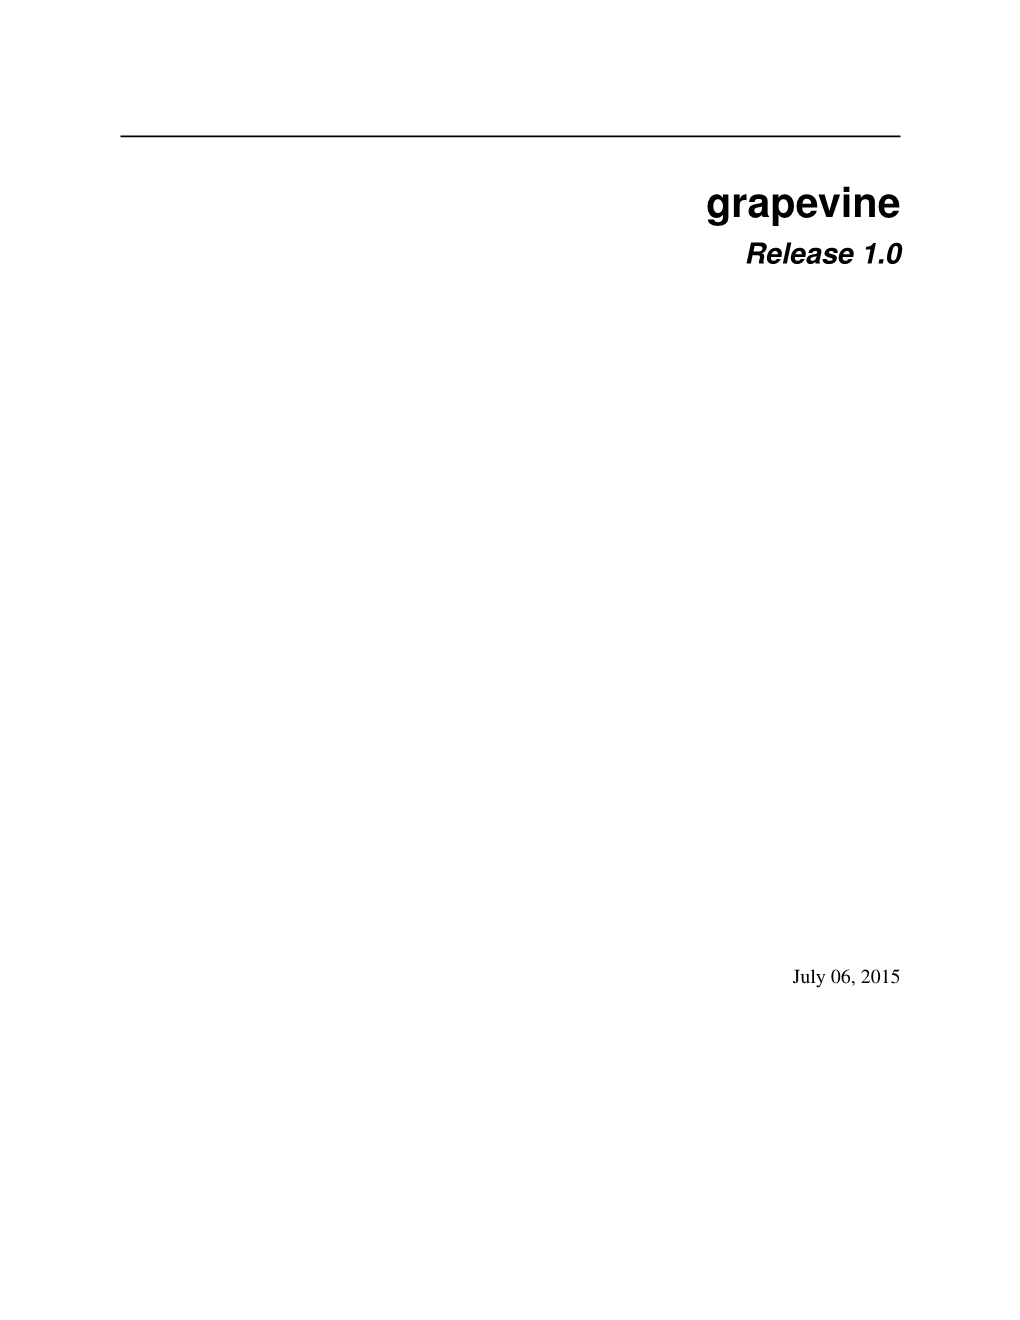 Grapevine Release 1.0